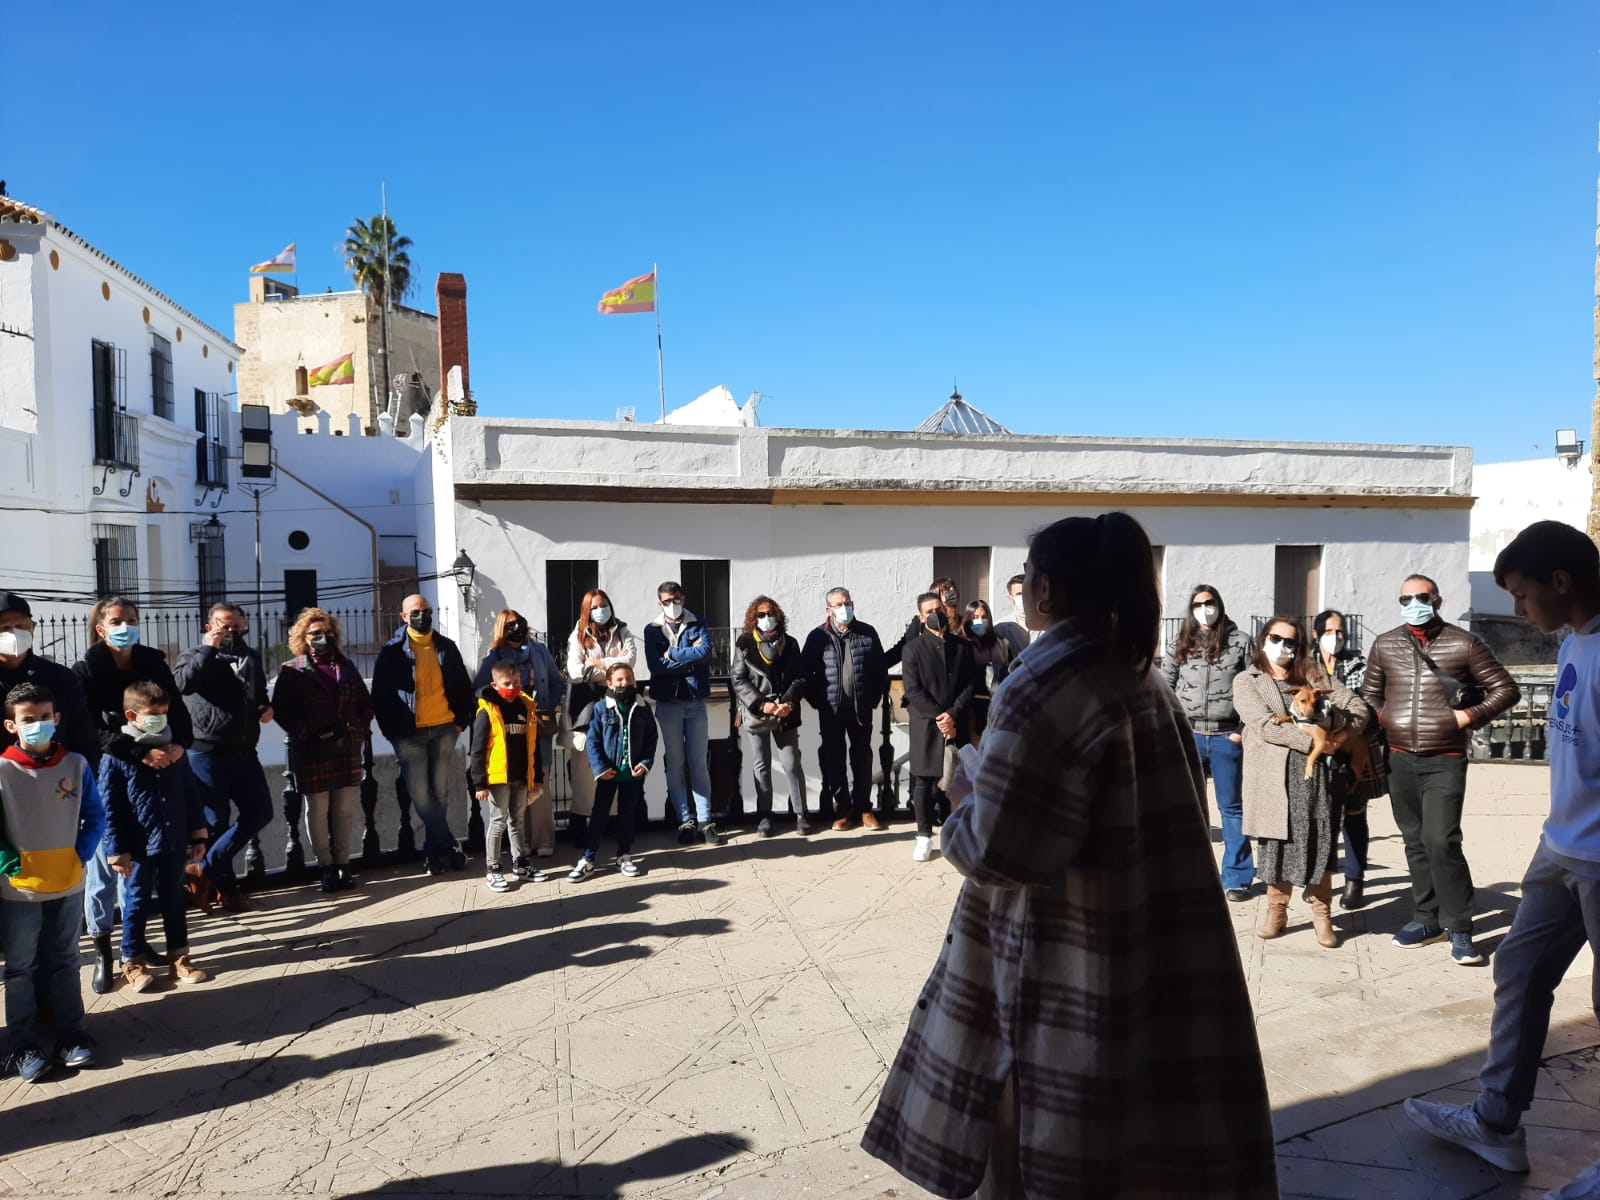 Éxito a nivel nacional en la última jornada de visita a la Torre de Santiago el Mayor de Utrera